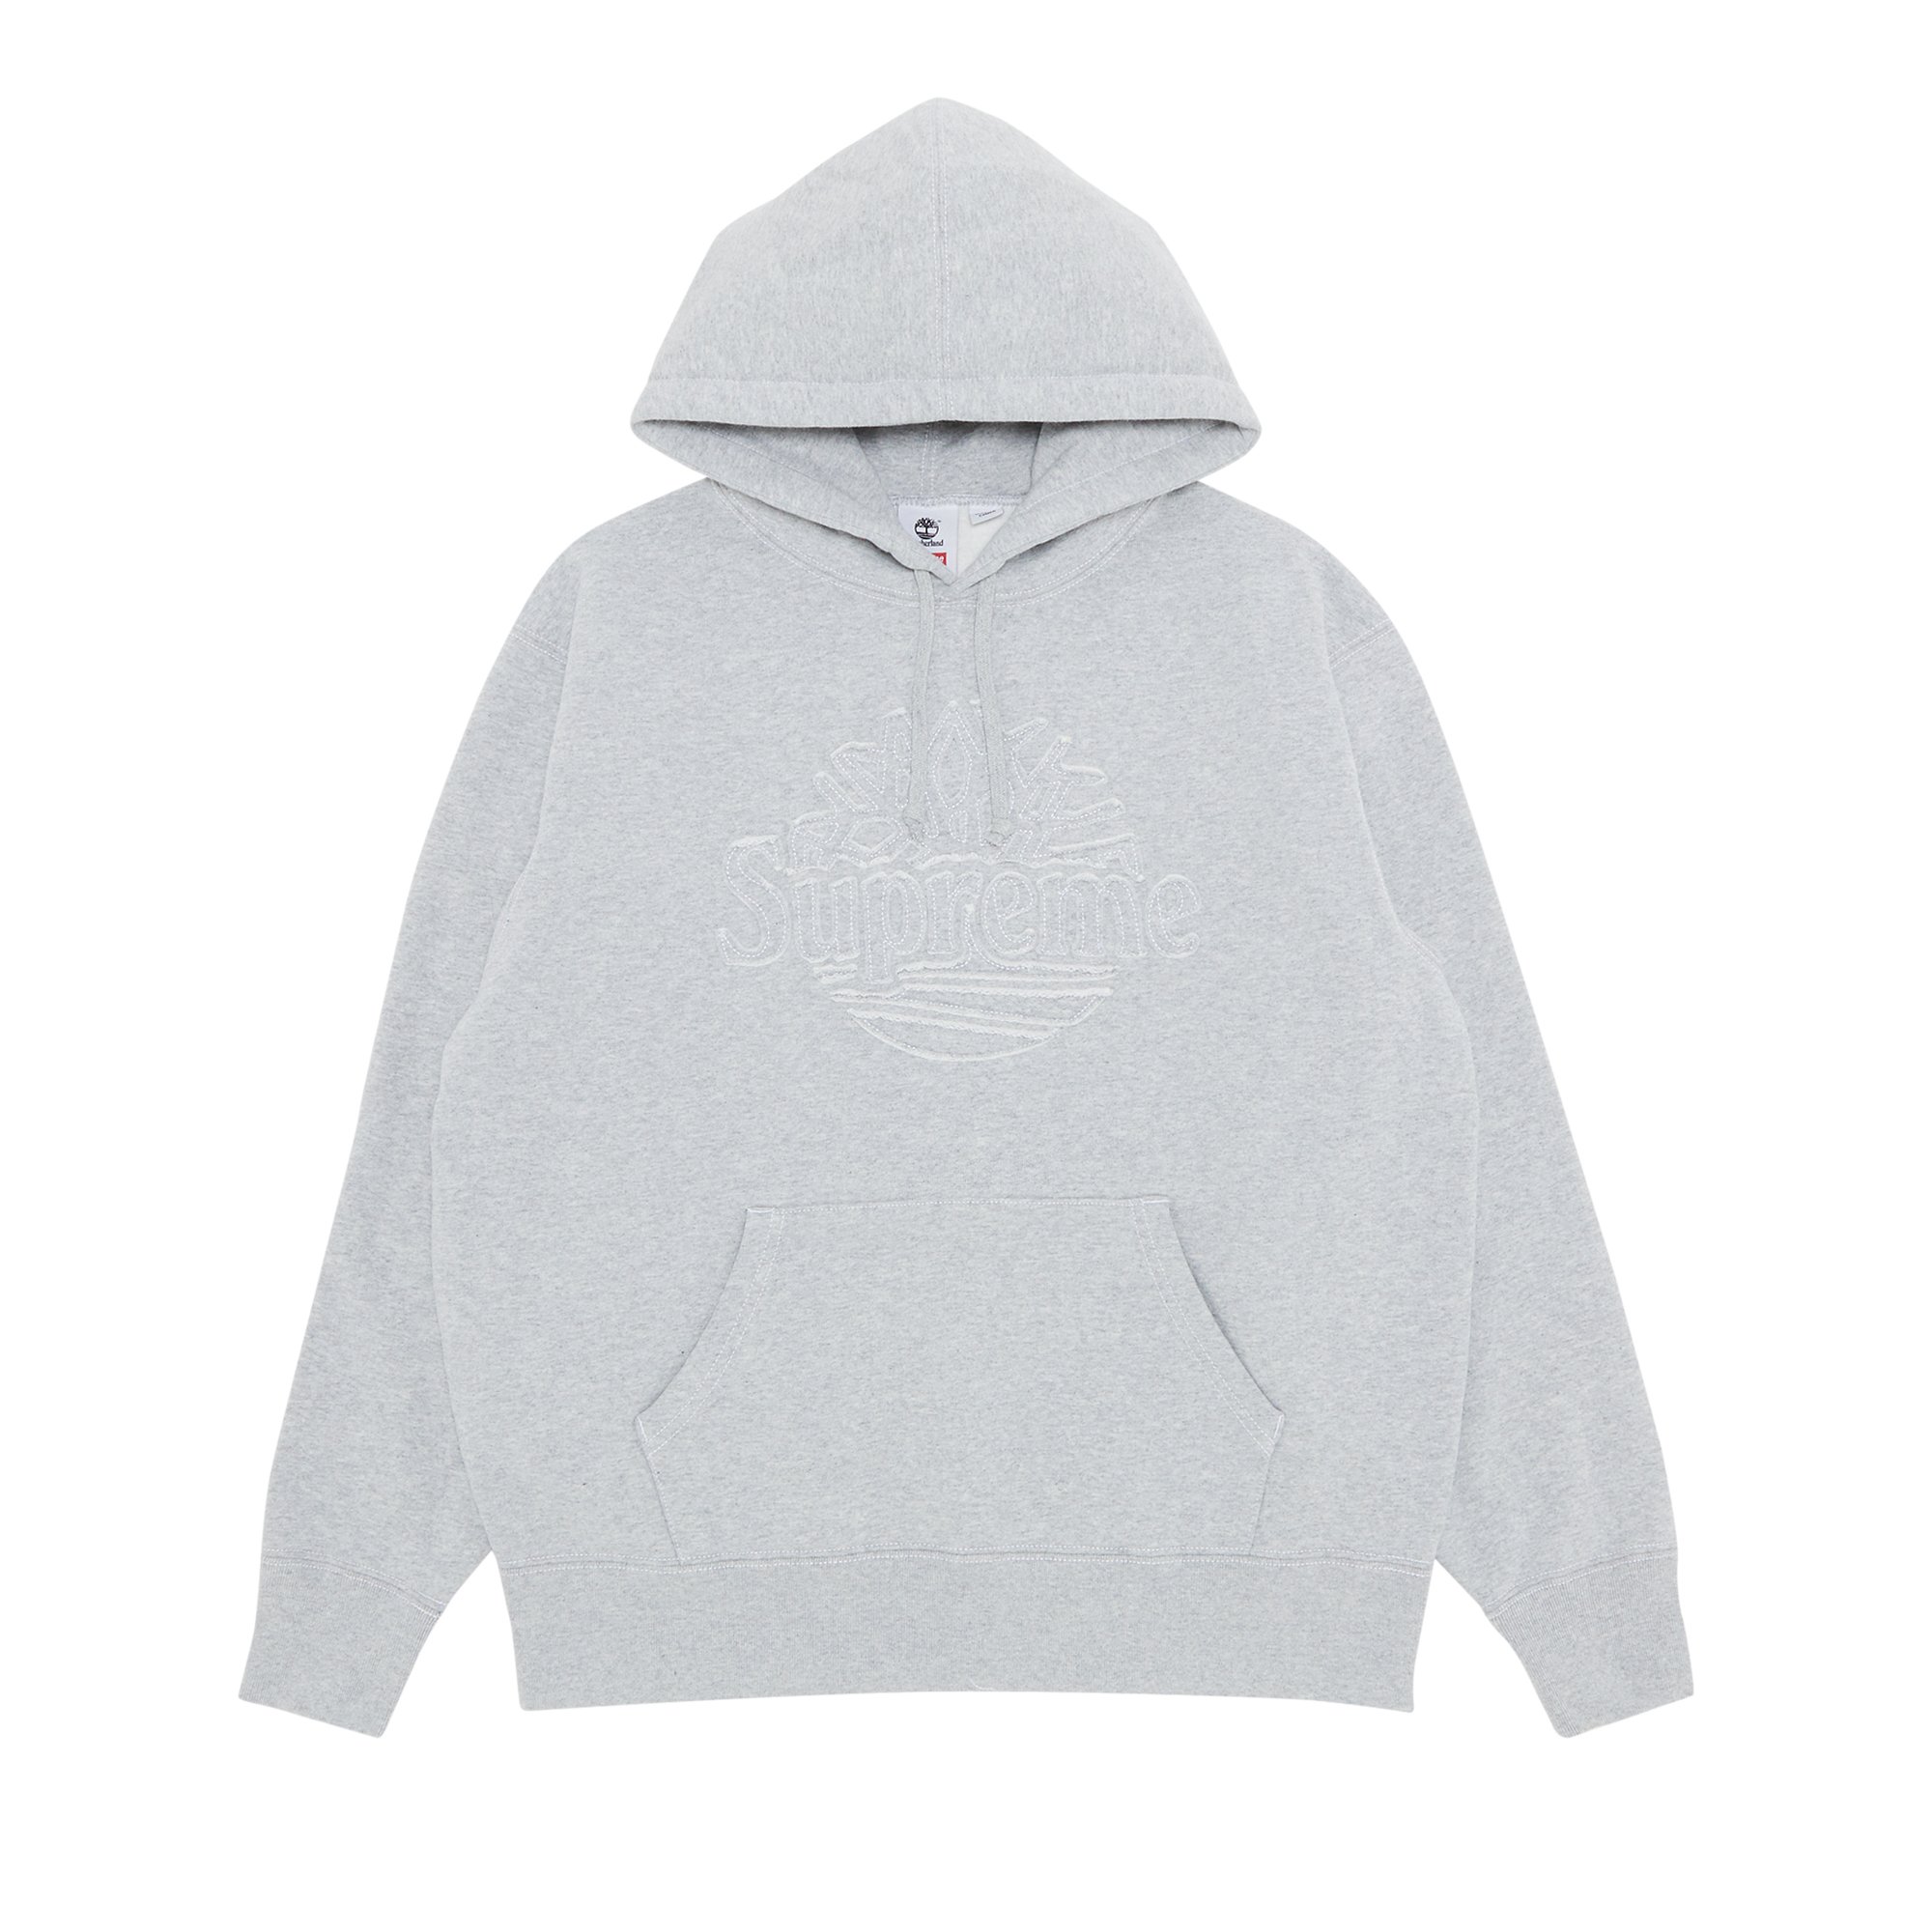 Buy Supreme x Timberland Hooded Sweatshirt 'Heather Grey